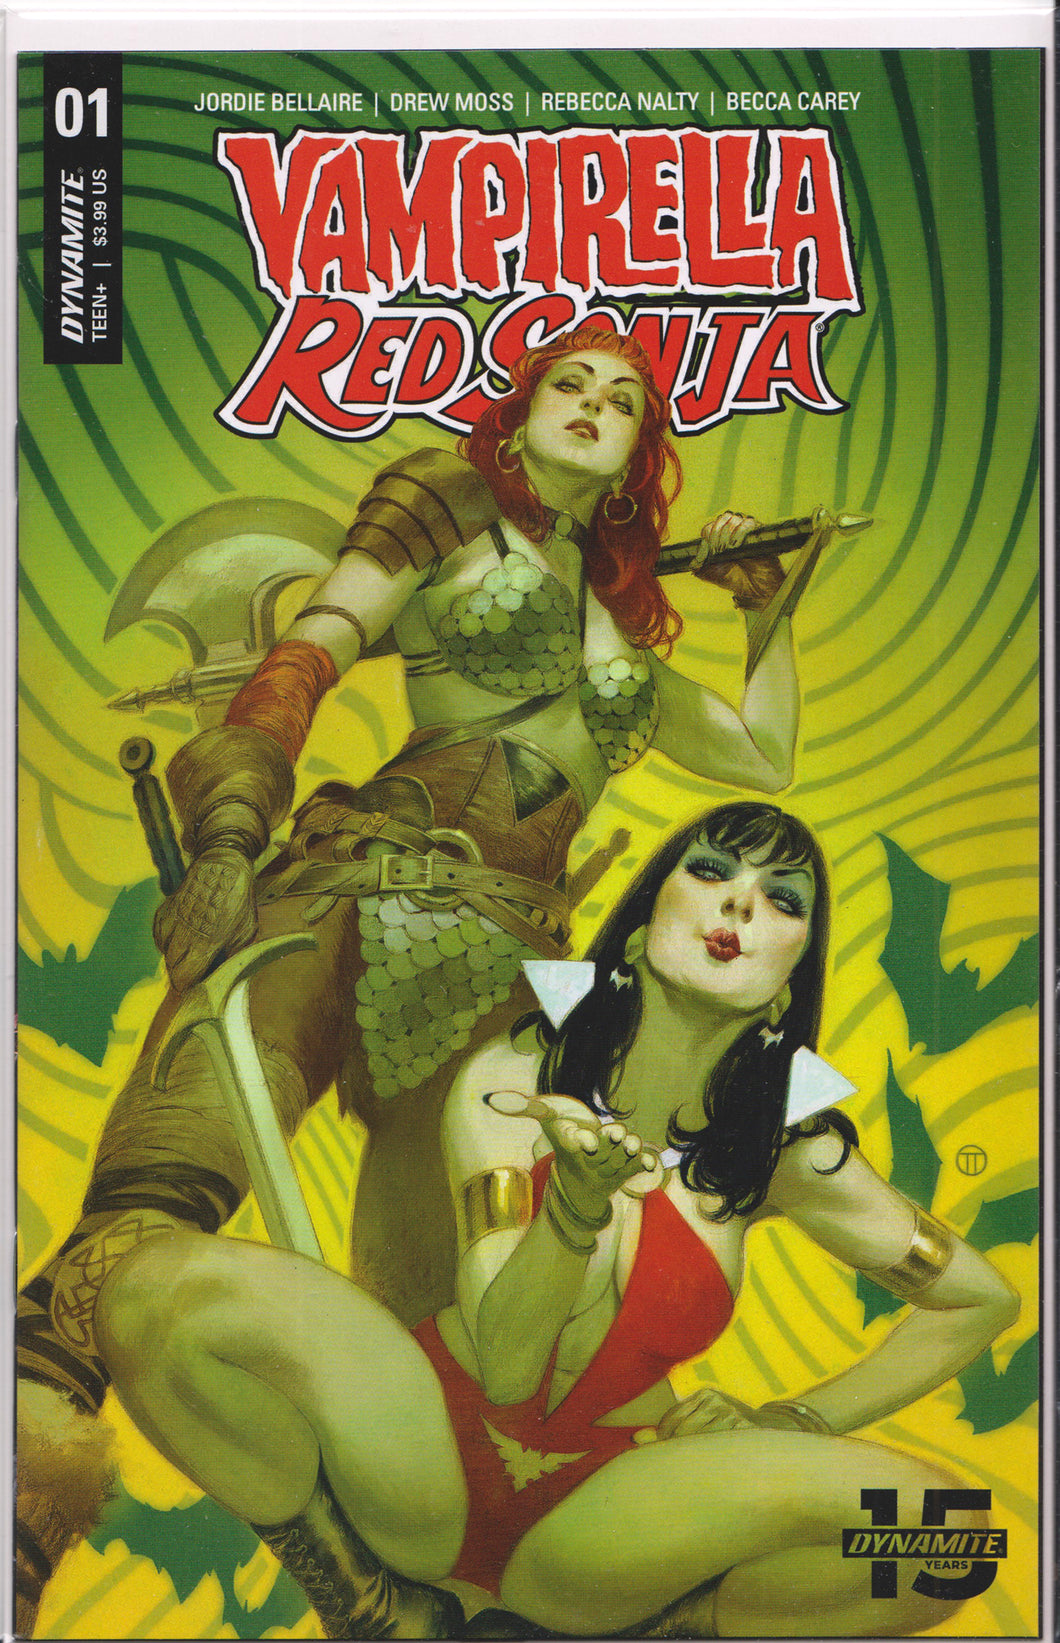 VAMPIRELLA/RED SONJA #1 (TEDESCO VARIANT) COMIC BOOK ~ Dynamite